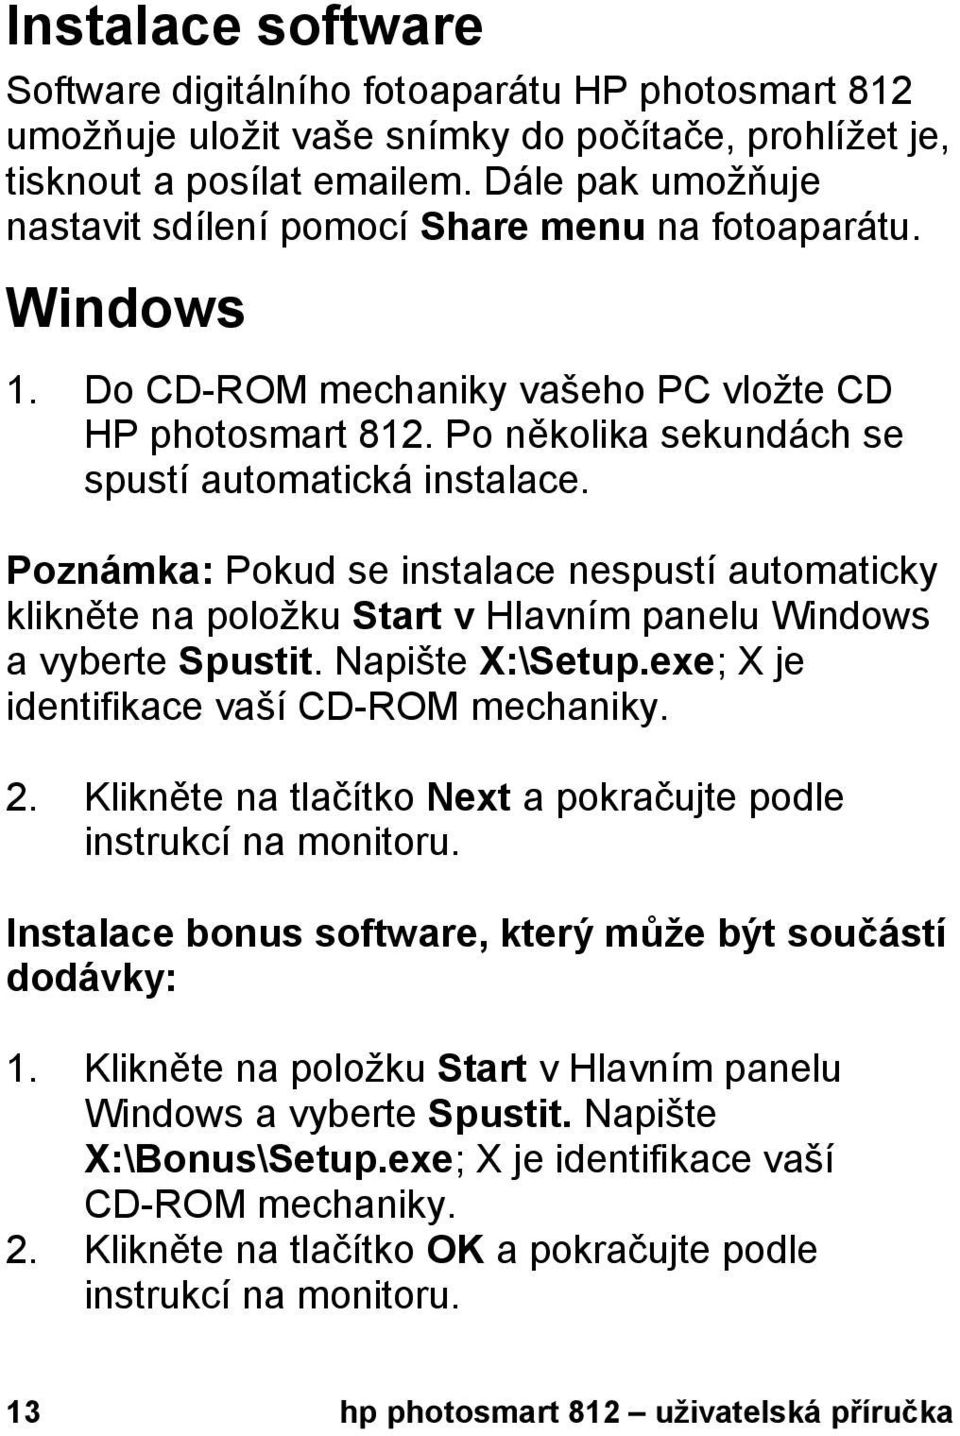 Poznámka: Pokud se instalace nespustí automaticky klikněte na položku Start v Hlavním panelu Windows a vyberte Spustit. Napište X:\Setup.exe; X je identifikace vaší CD-ROM mechaniky. 2.